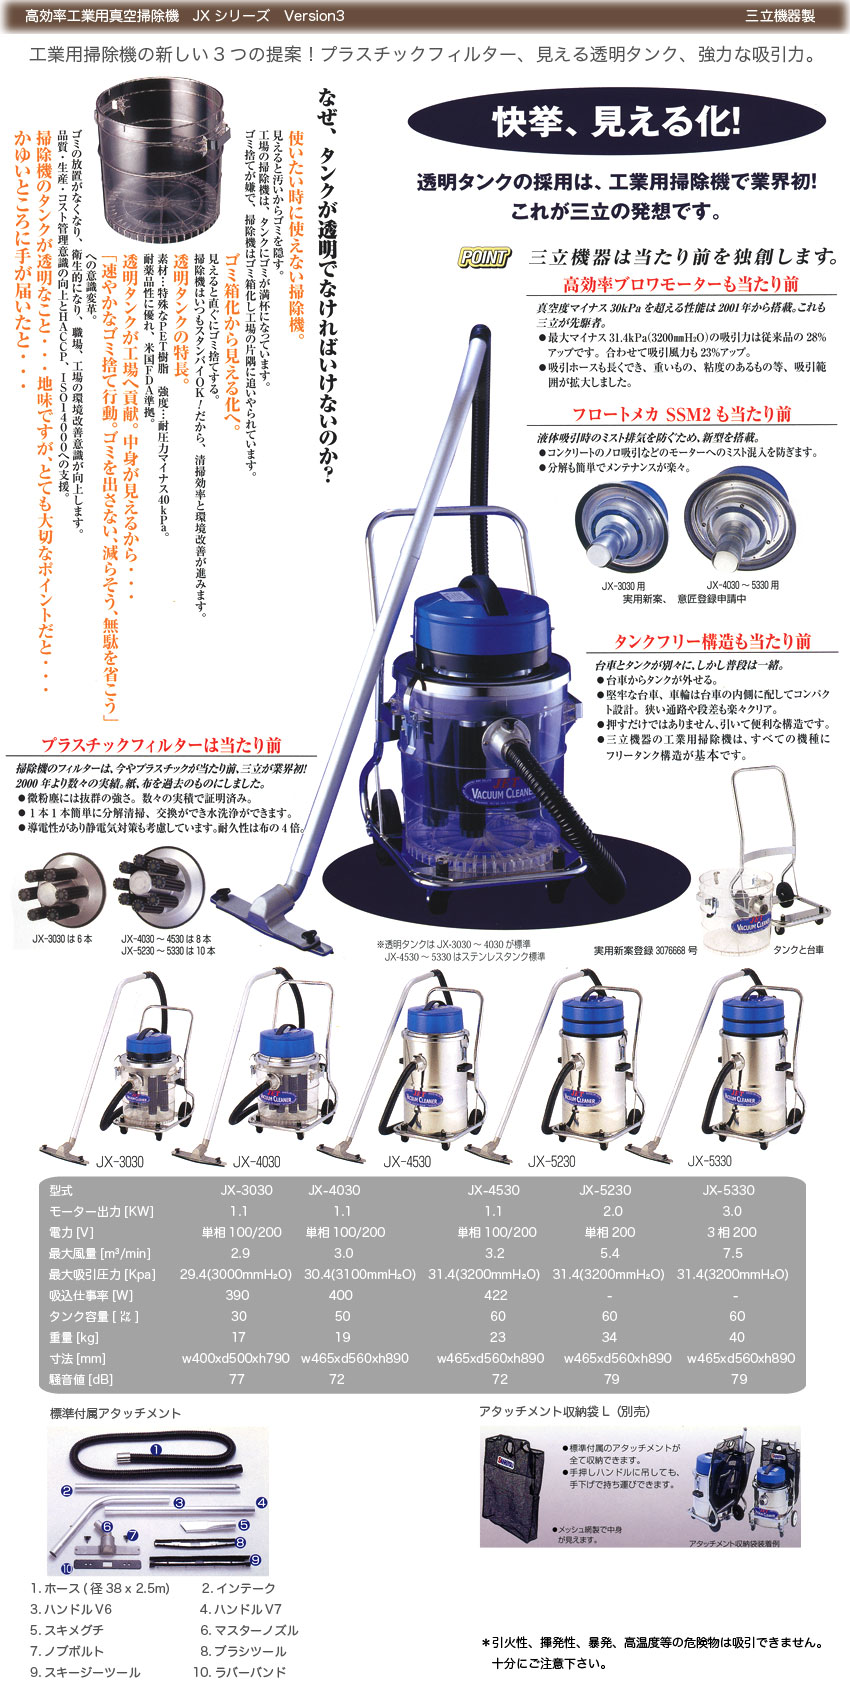 お中元 ProShop伊達三立機器 株 Wet or Dry乾湿切替選択型 JX-Ver.3シリーズ 100V JX-3030 E 